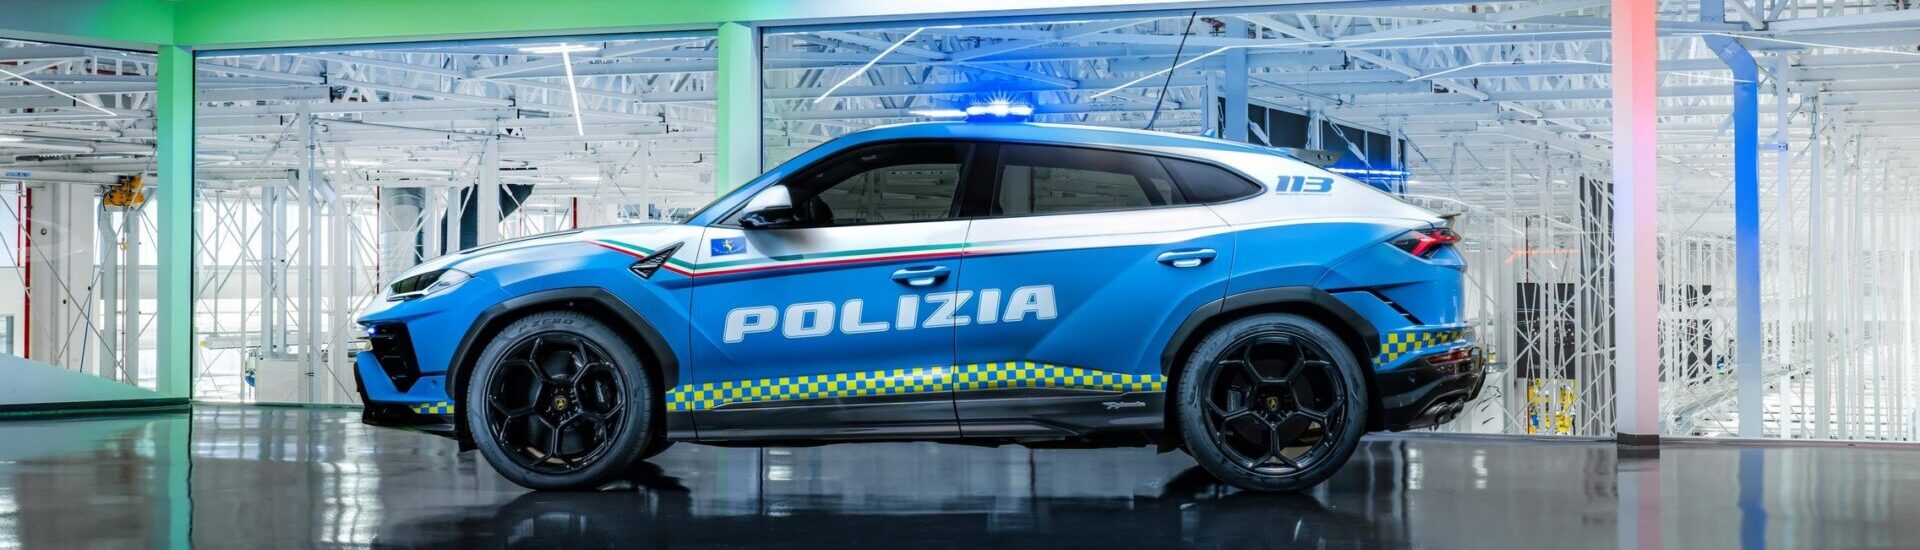 Lamborghini Urus Performante Polizia готова к молниеносным специальным действиям